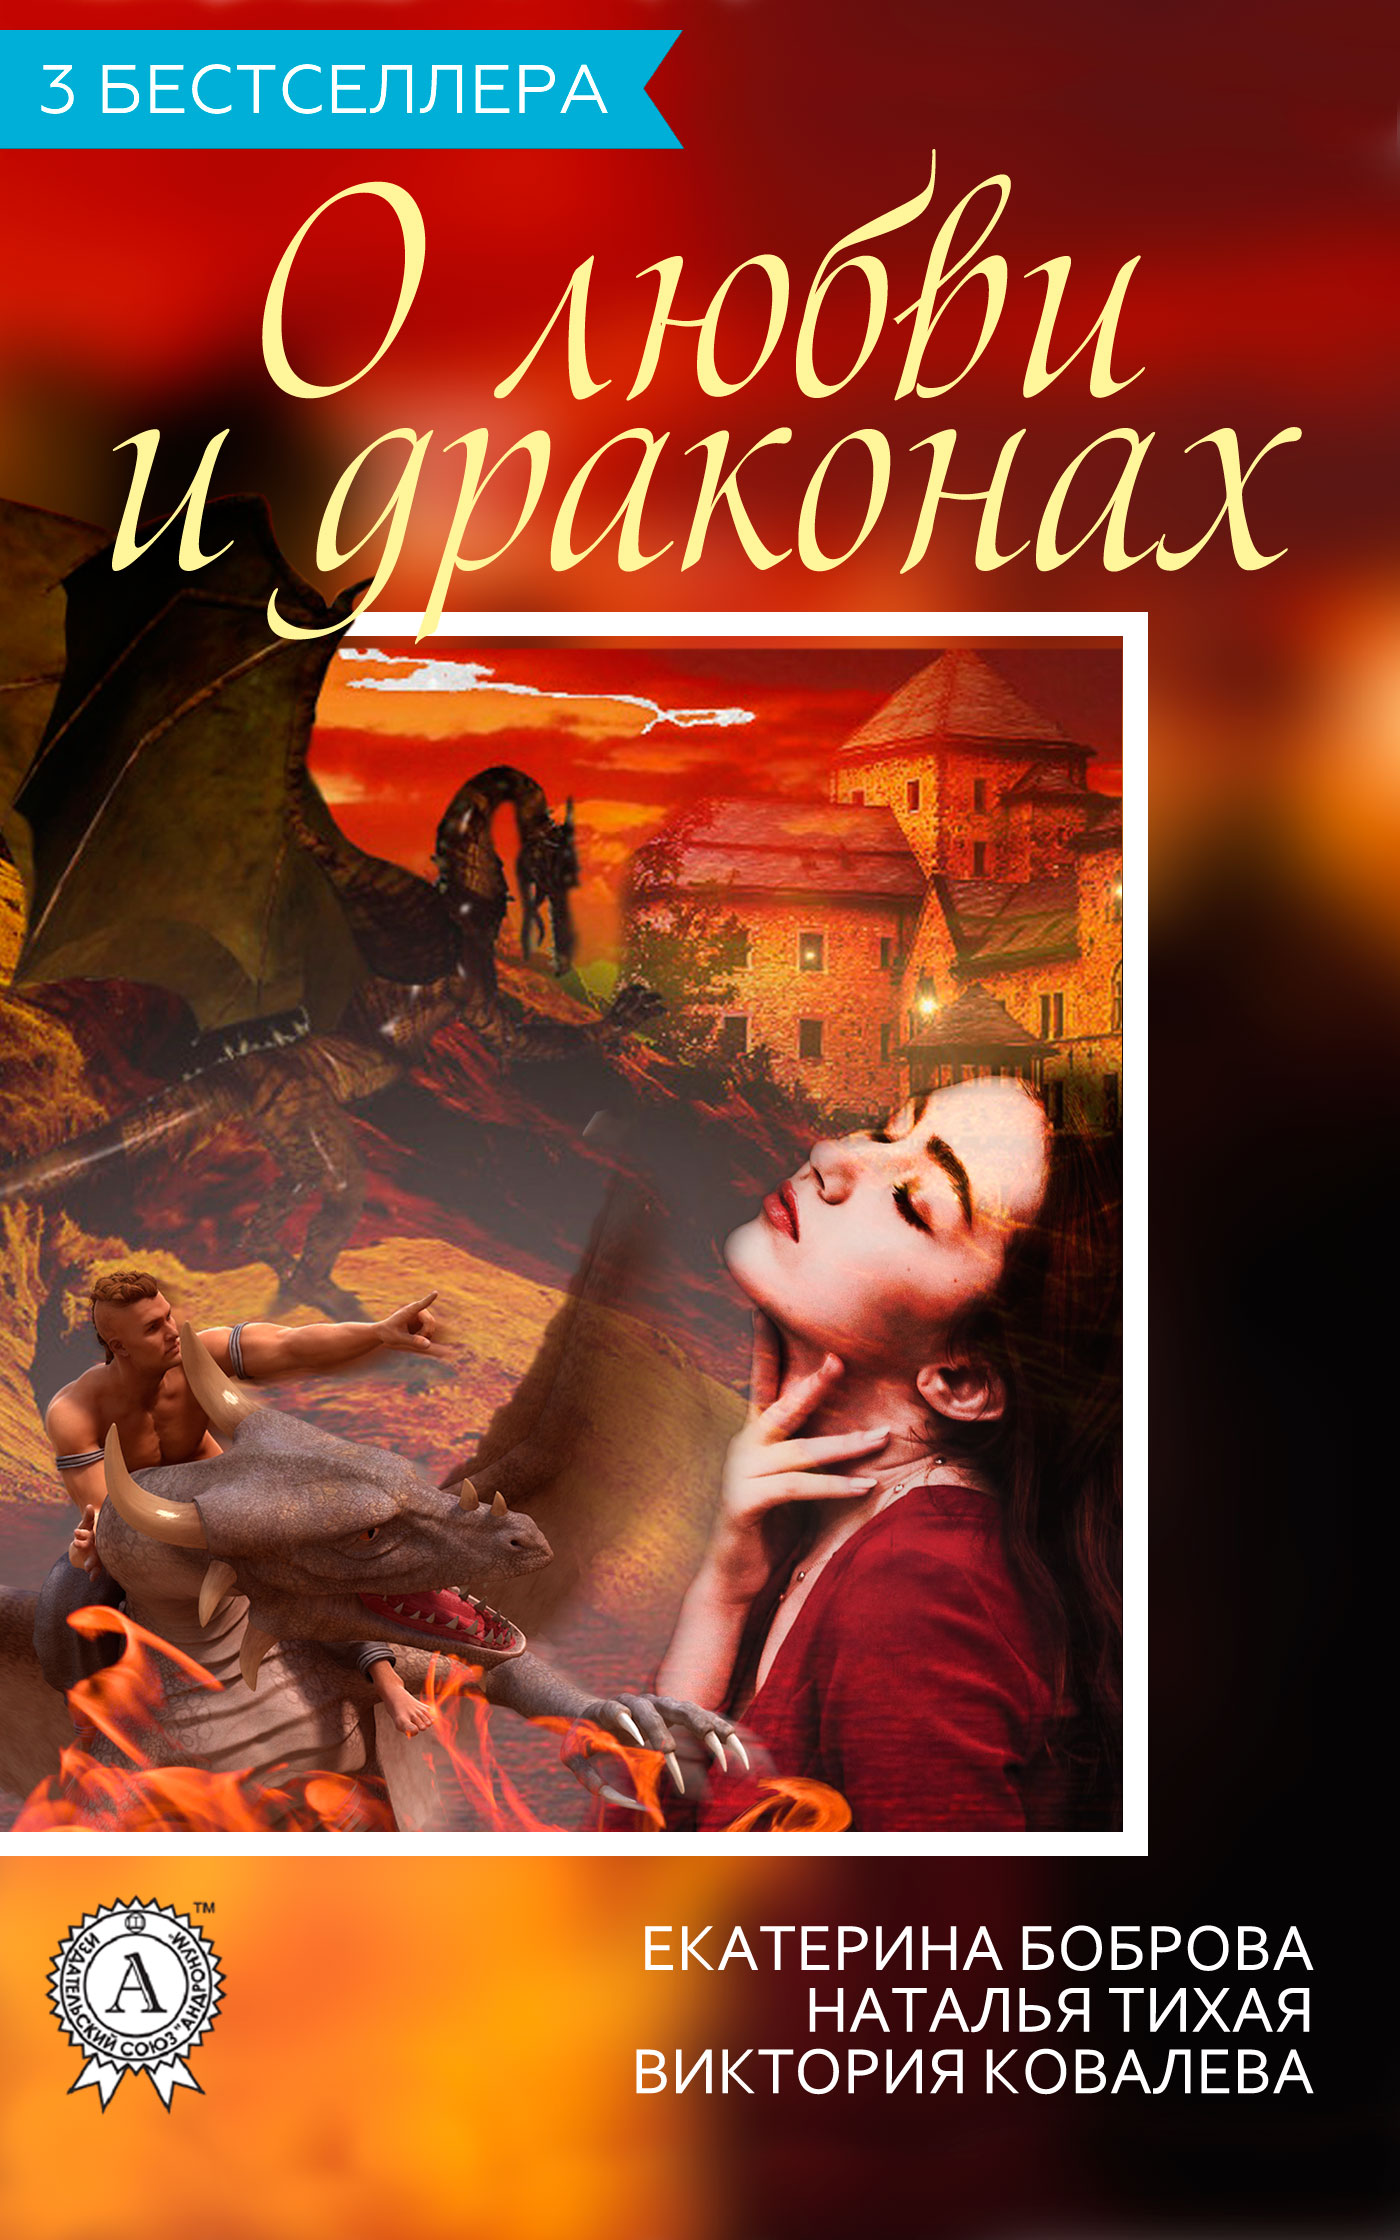 Боброва Екатерина - Сборник «3 бестселлера о любви и драконах» скачать бесплатно